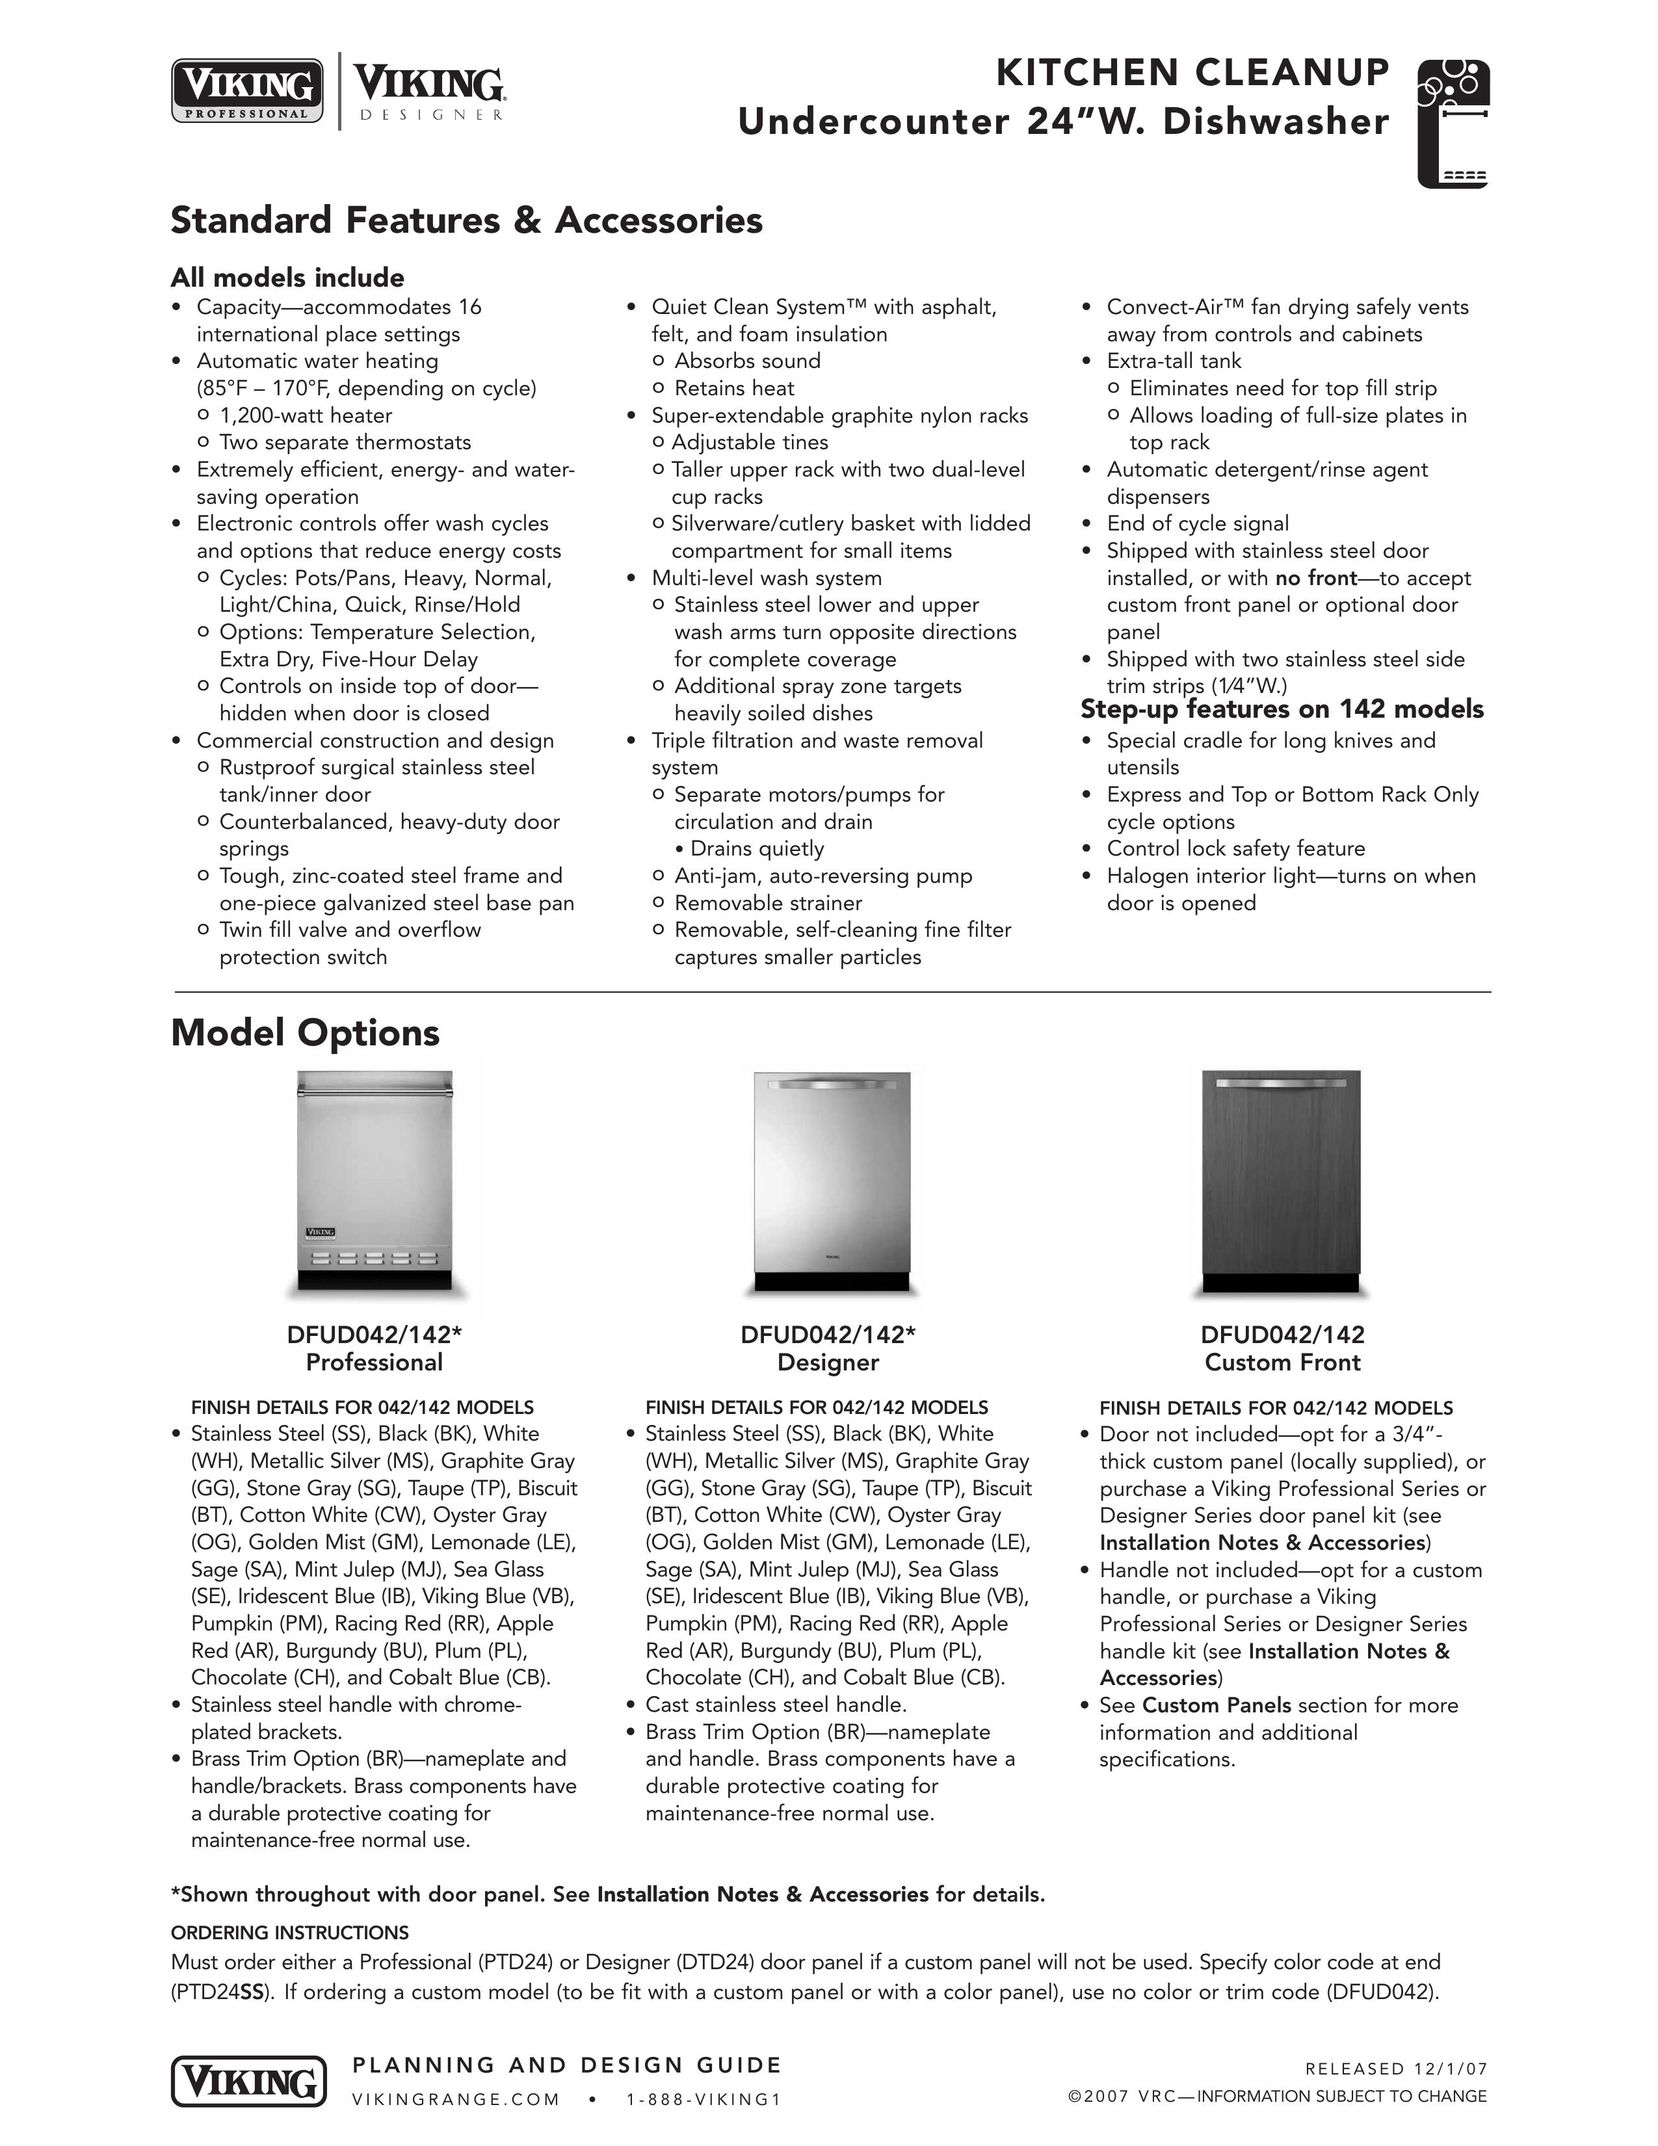 Viking DFUD042/142* Designer Dishwasher User Manual